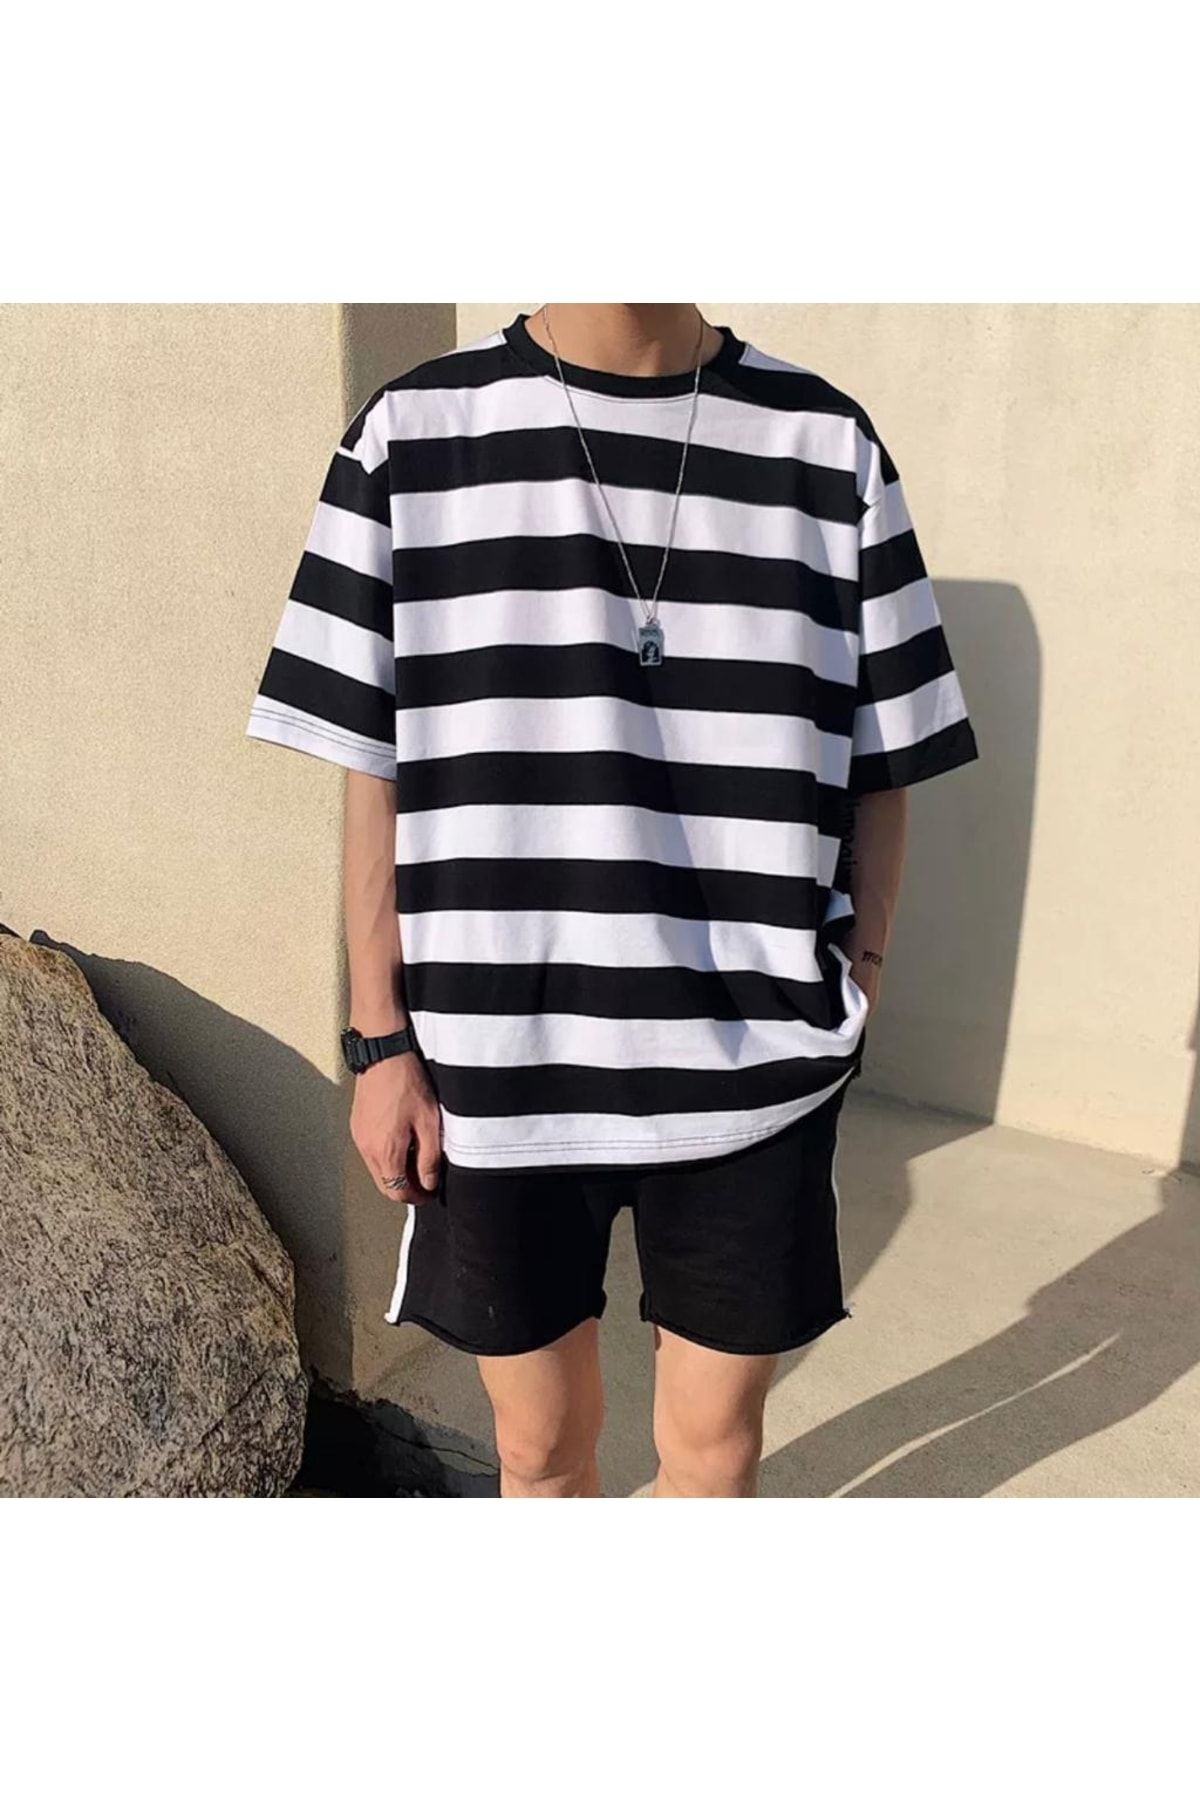 Harajuku Beyaz Siyah Çizgili Oversize (unisex) T-shirt